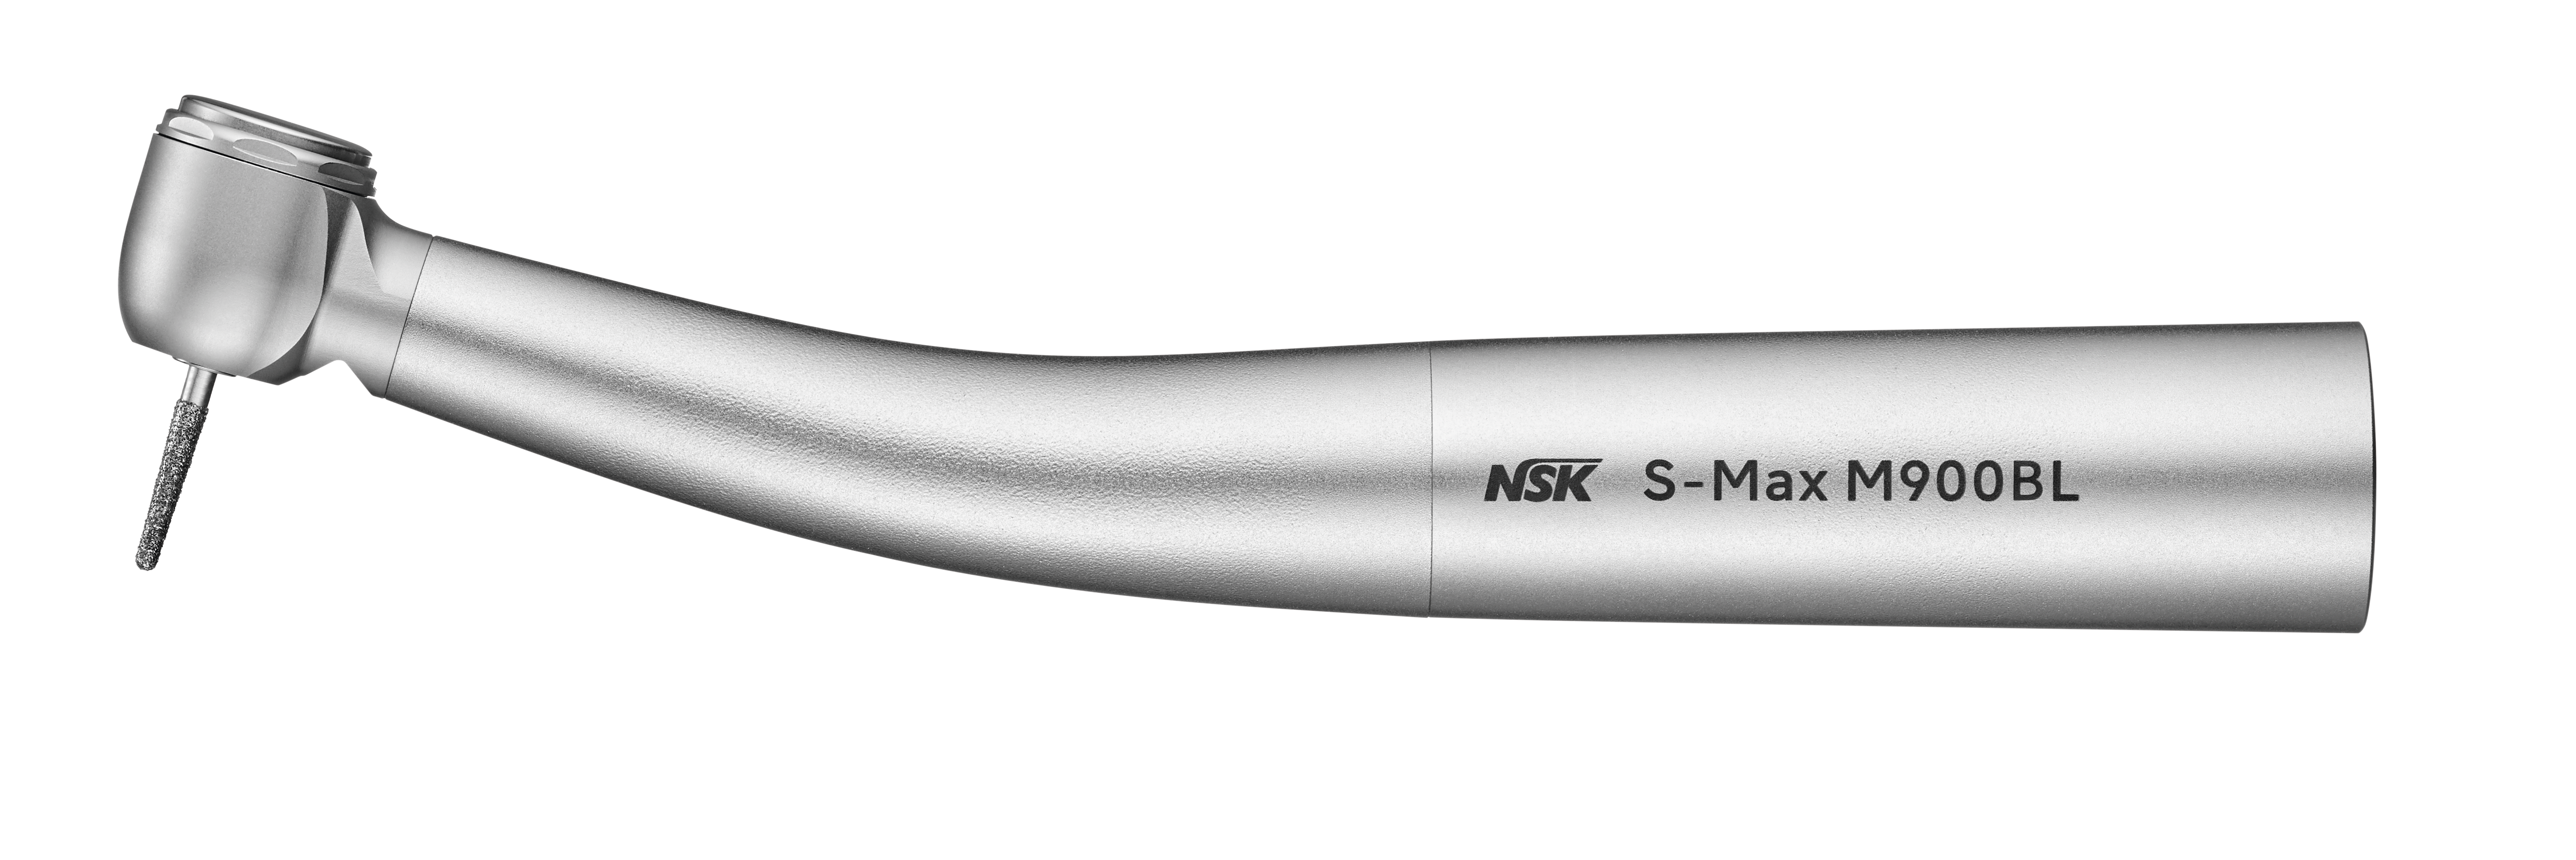 NSK S-Max M900BL, Lichtturbine, Bien-Air Unifix-Anschluss 4-fach Spray, Druckknopfspannzange, Keramik-Kugellager